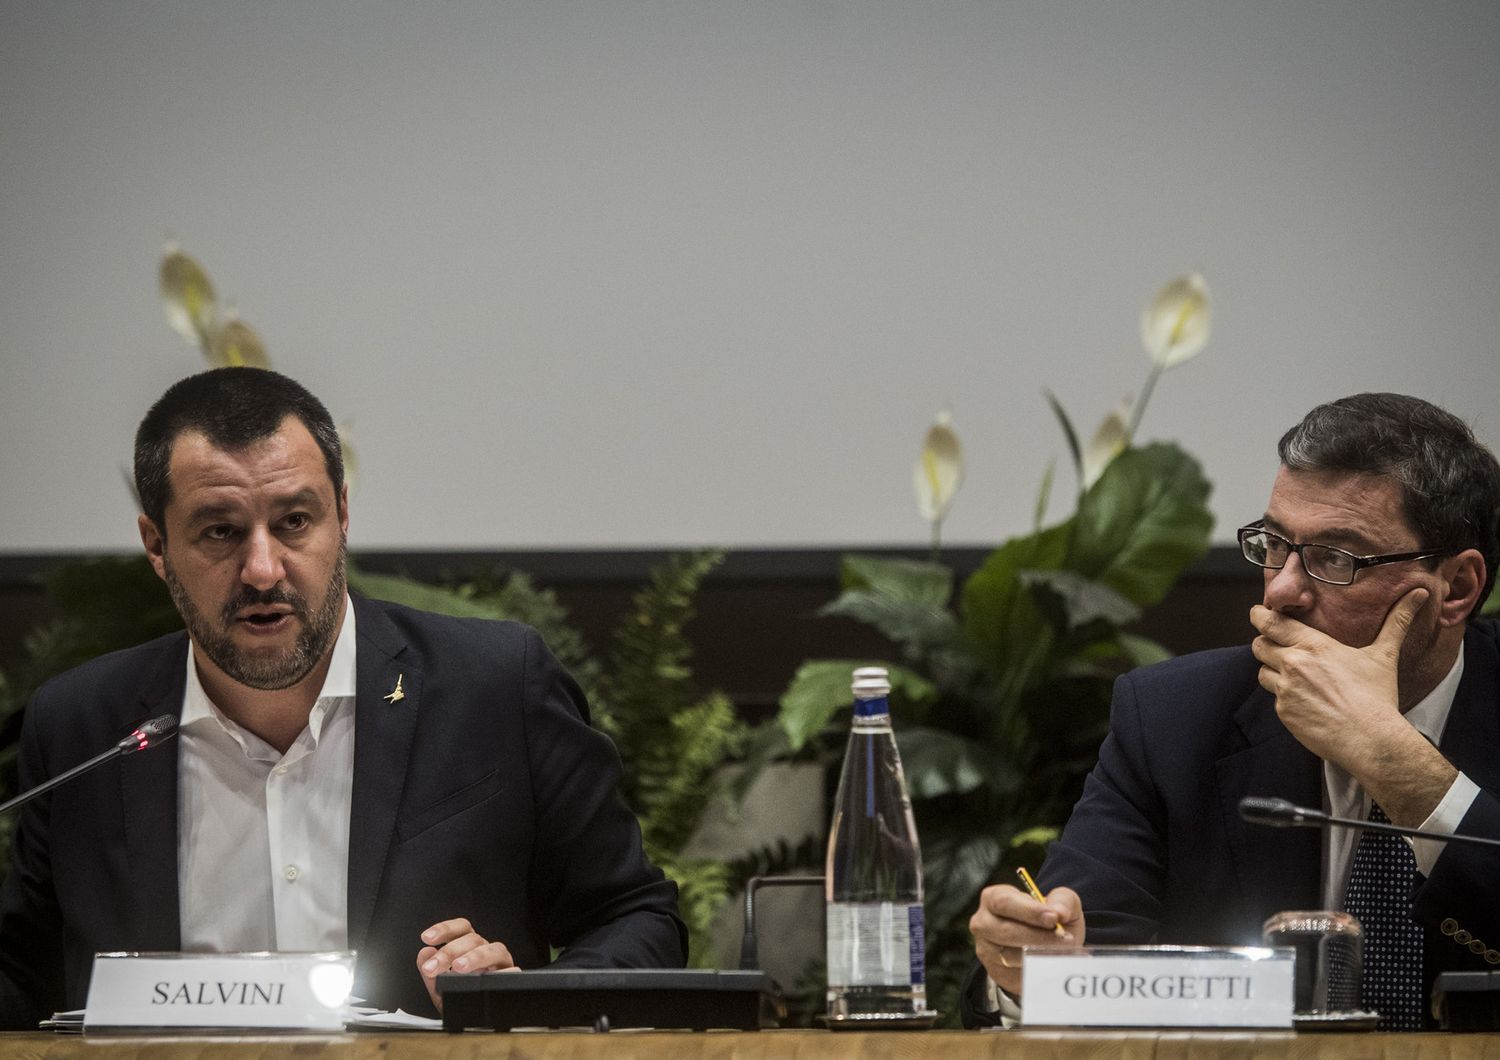 Matteo Salvini e Giancarlo Giorgetti